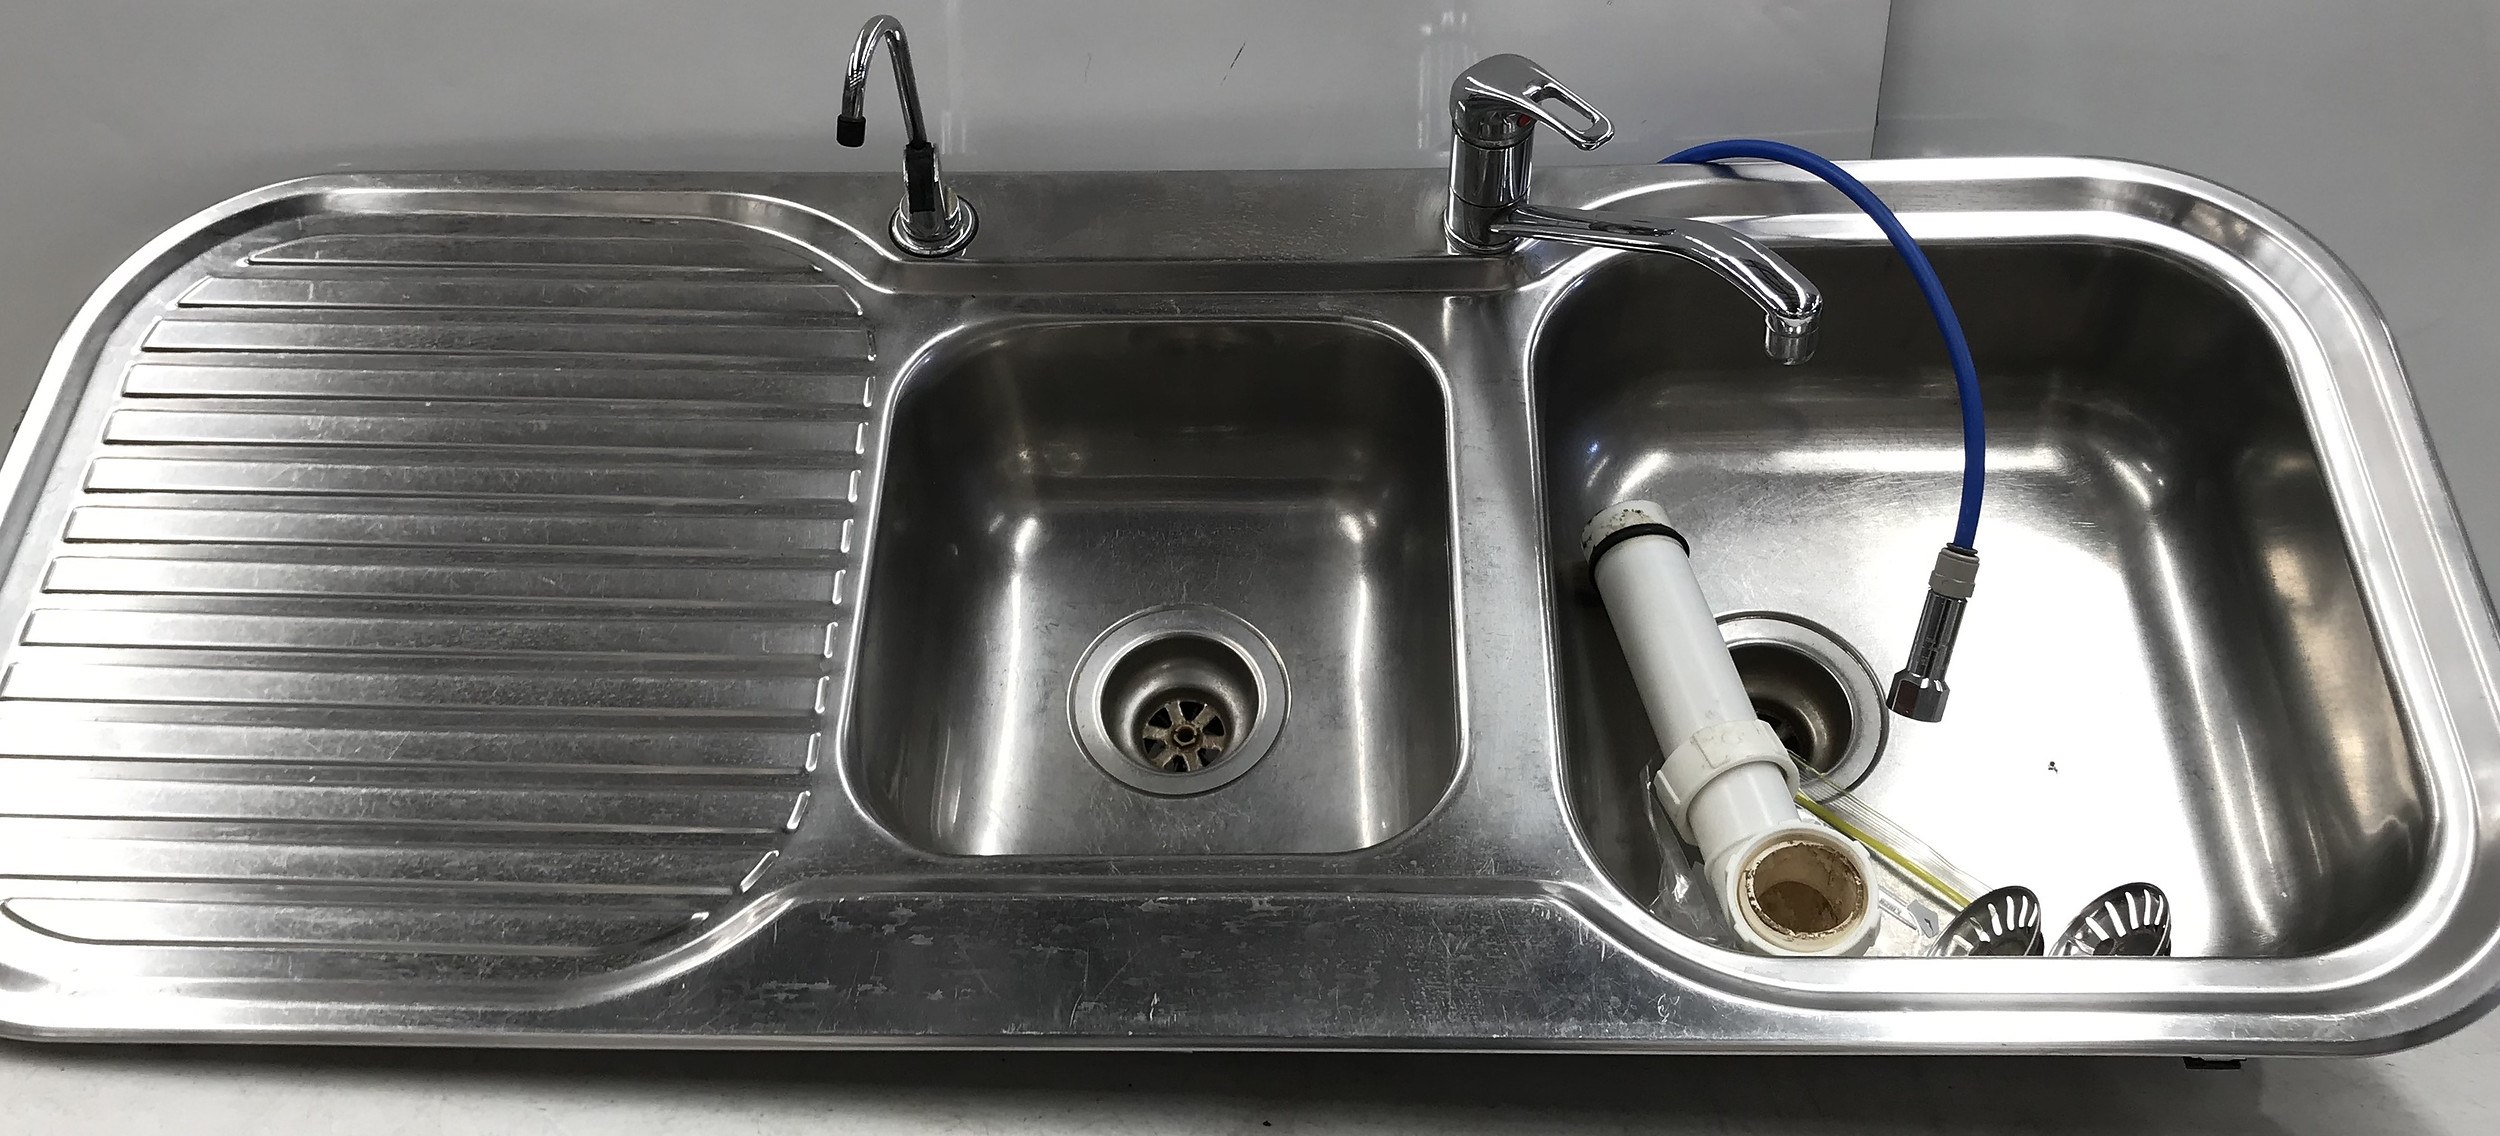 clark kitchen sink stainless steel